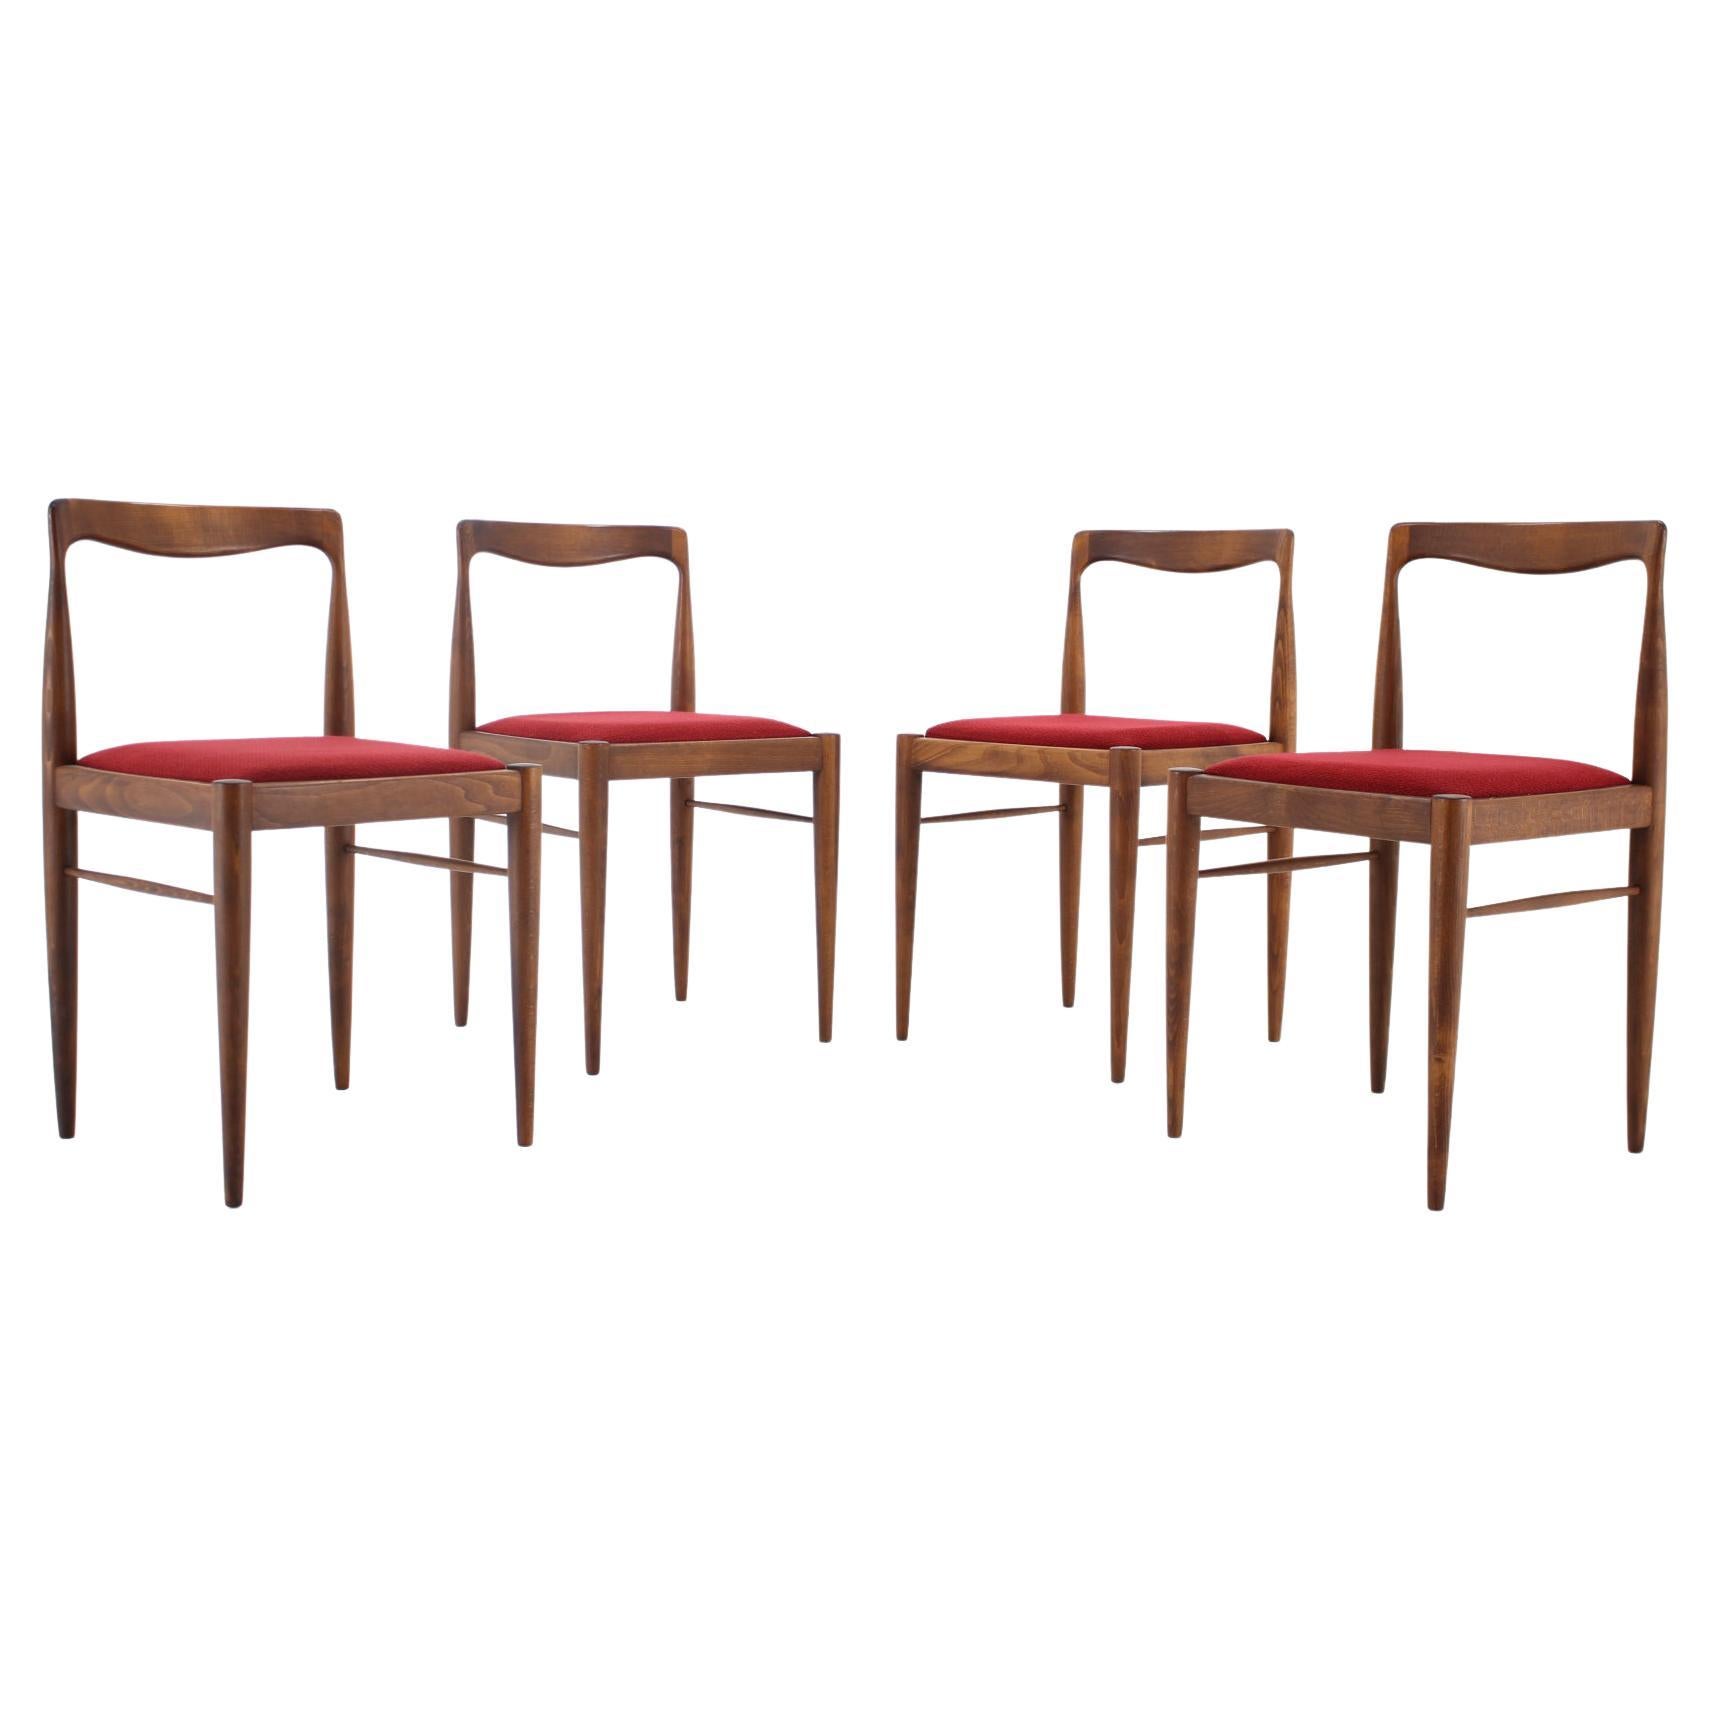 1970s Set of 4 Minimalist Dining Chairs by Drevotvar, Czechoslovakia